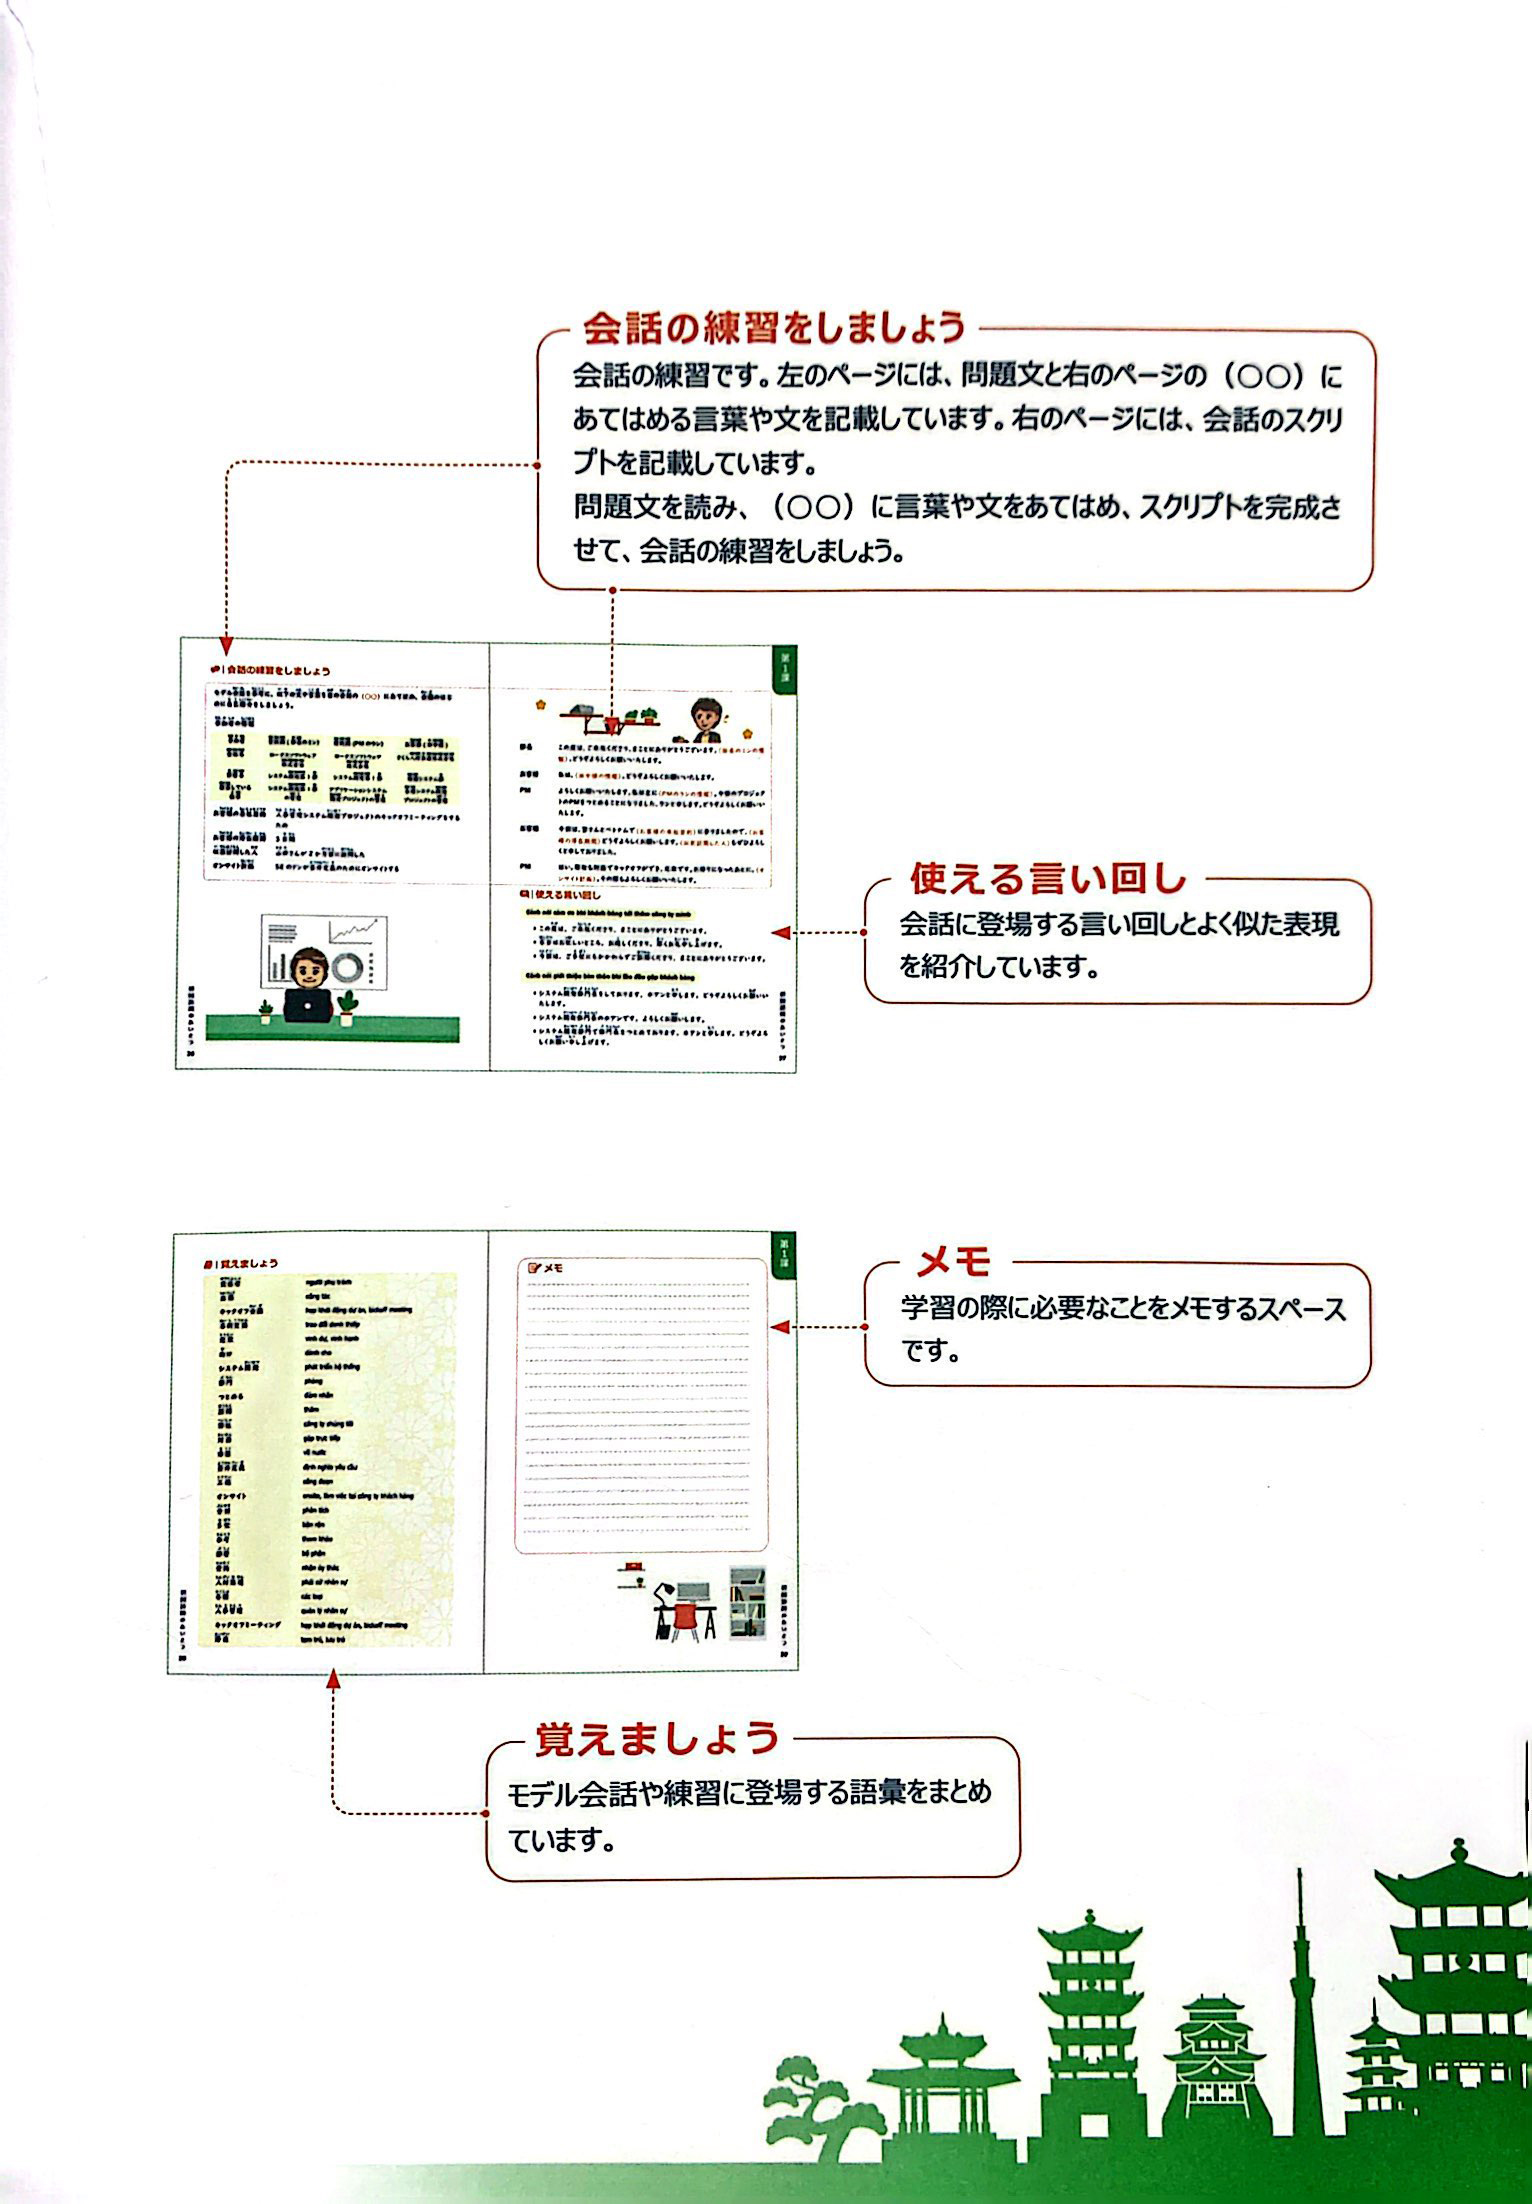 Tiếng Nhật Công Nghệ Thông Tin Trong Ngành Phần Mềm - Hội Thoại Trong Dự Án Phần Mềm PDF